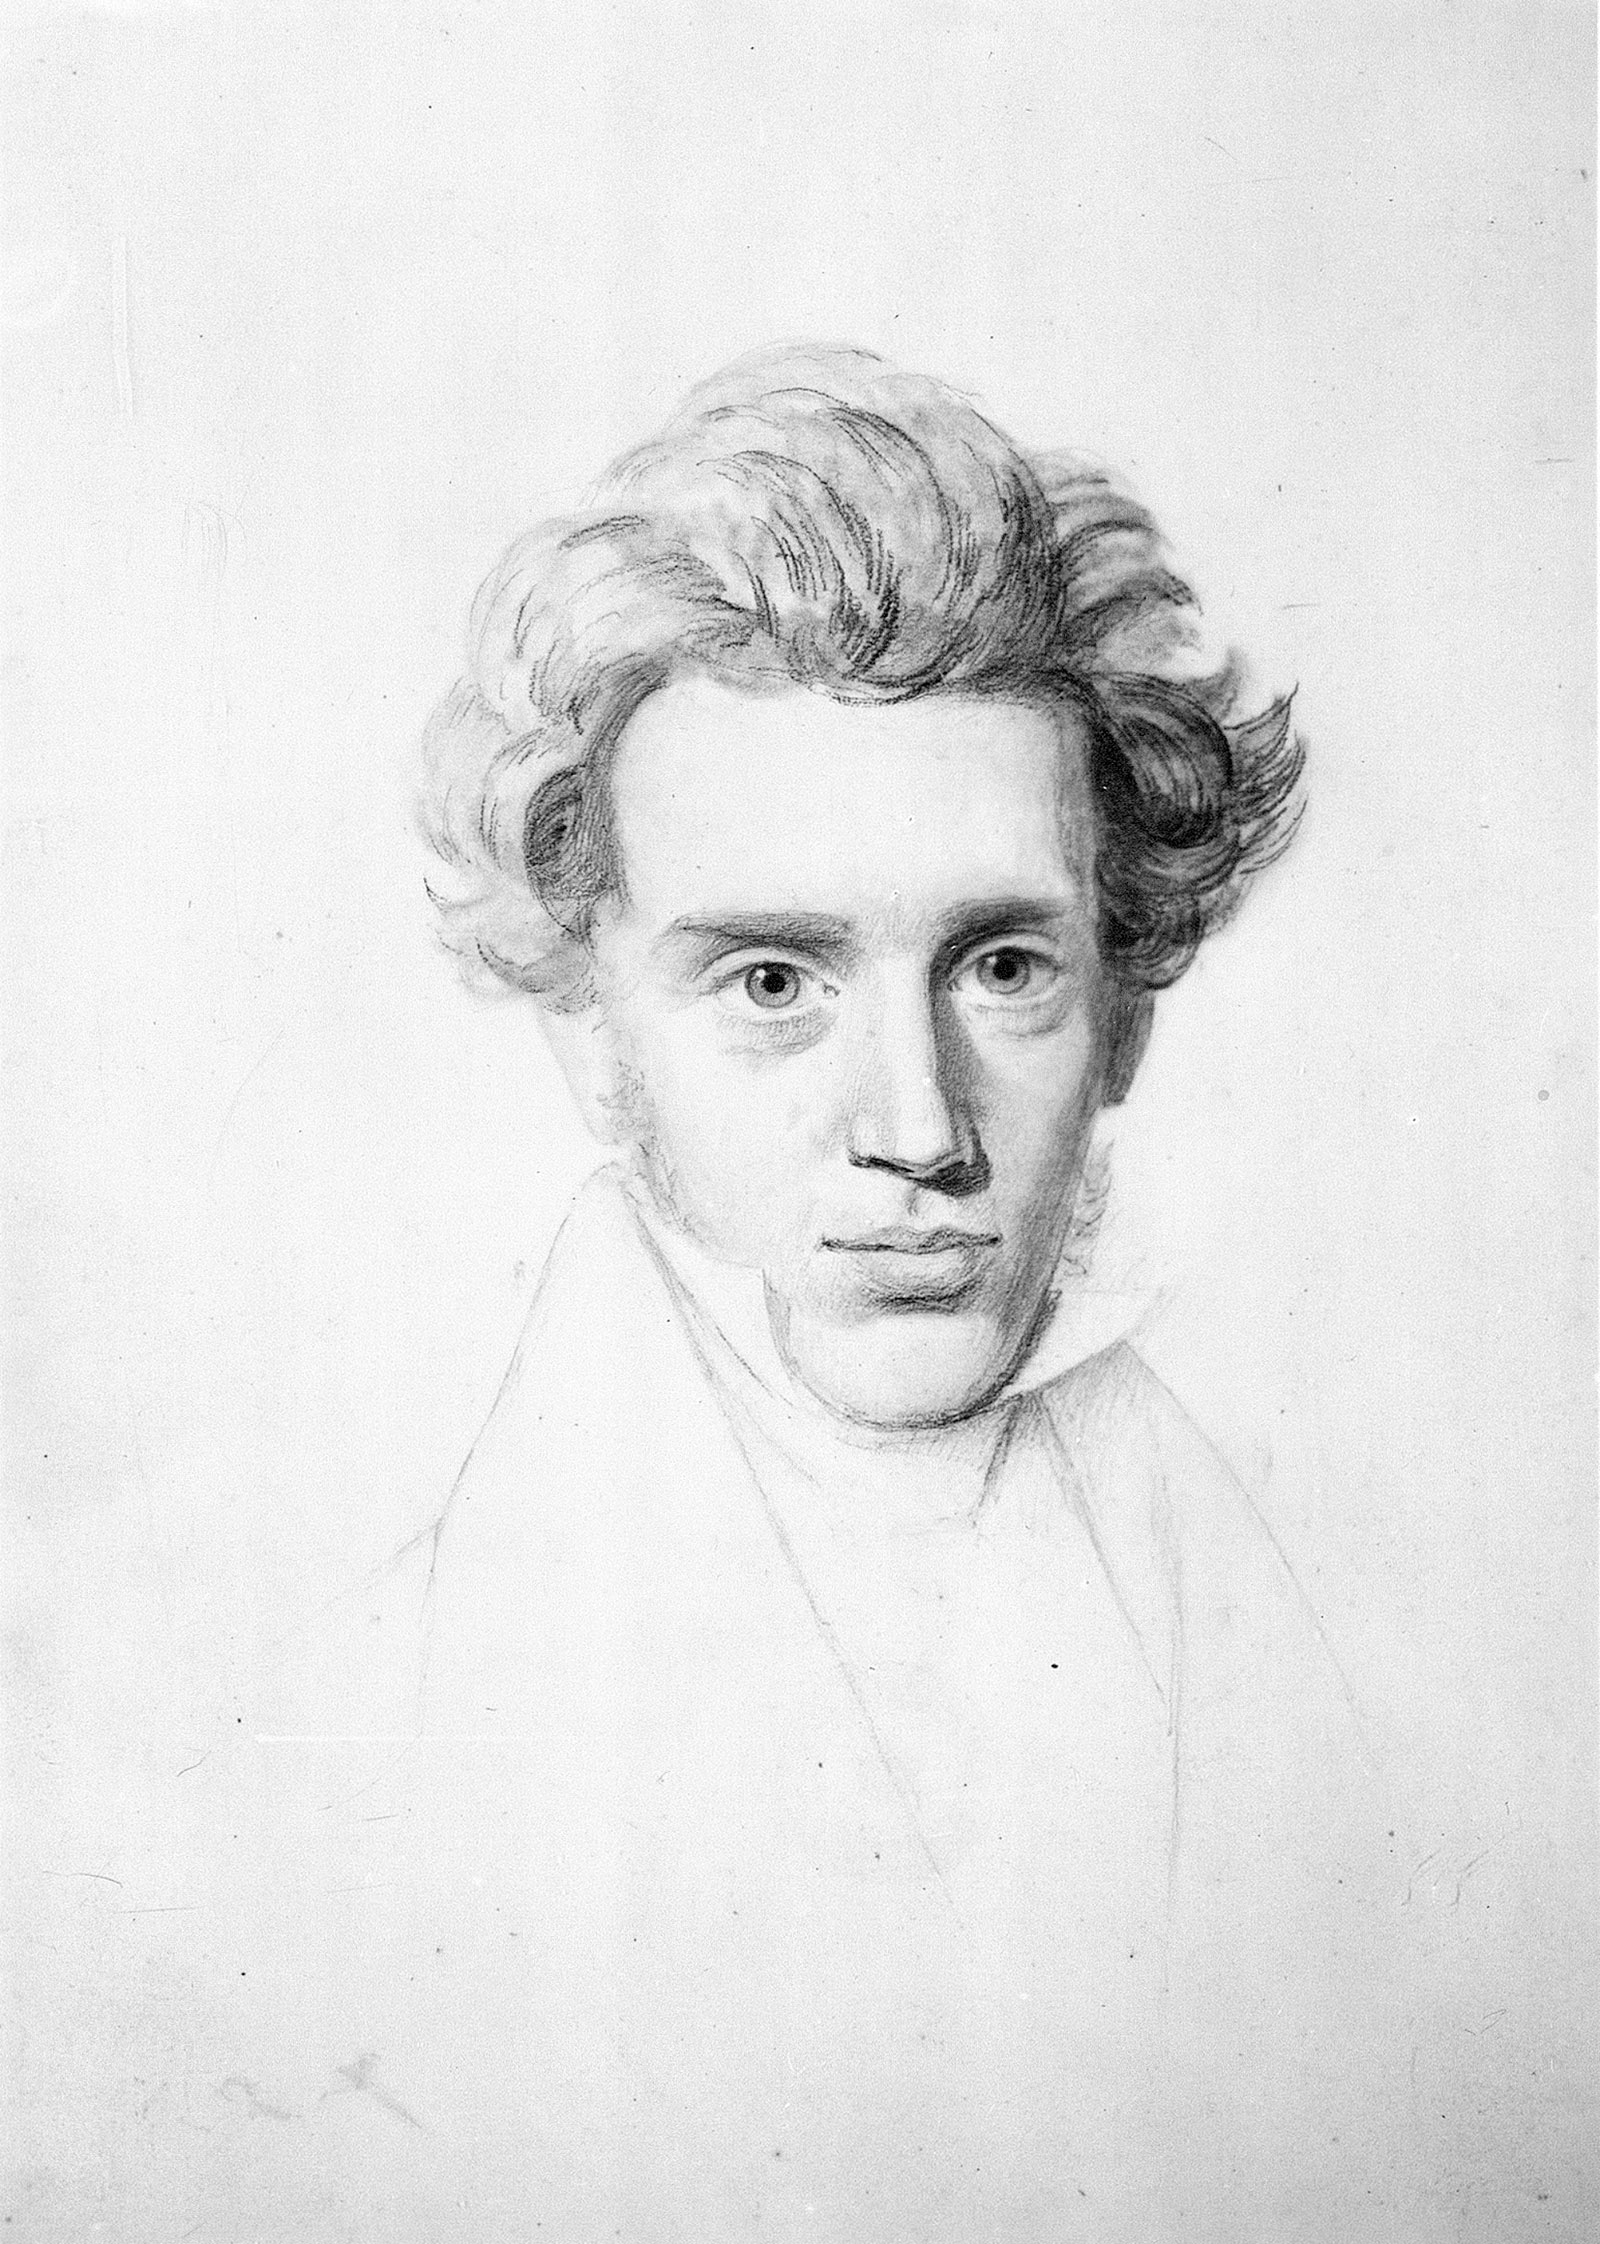 Søren Kierkegaard; drawing by Niels Christian Kierkegaard, circa 1840